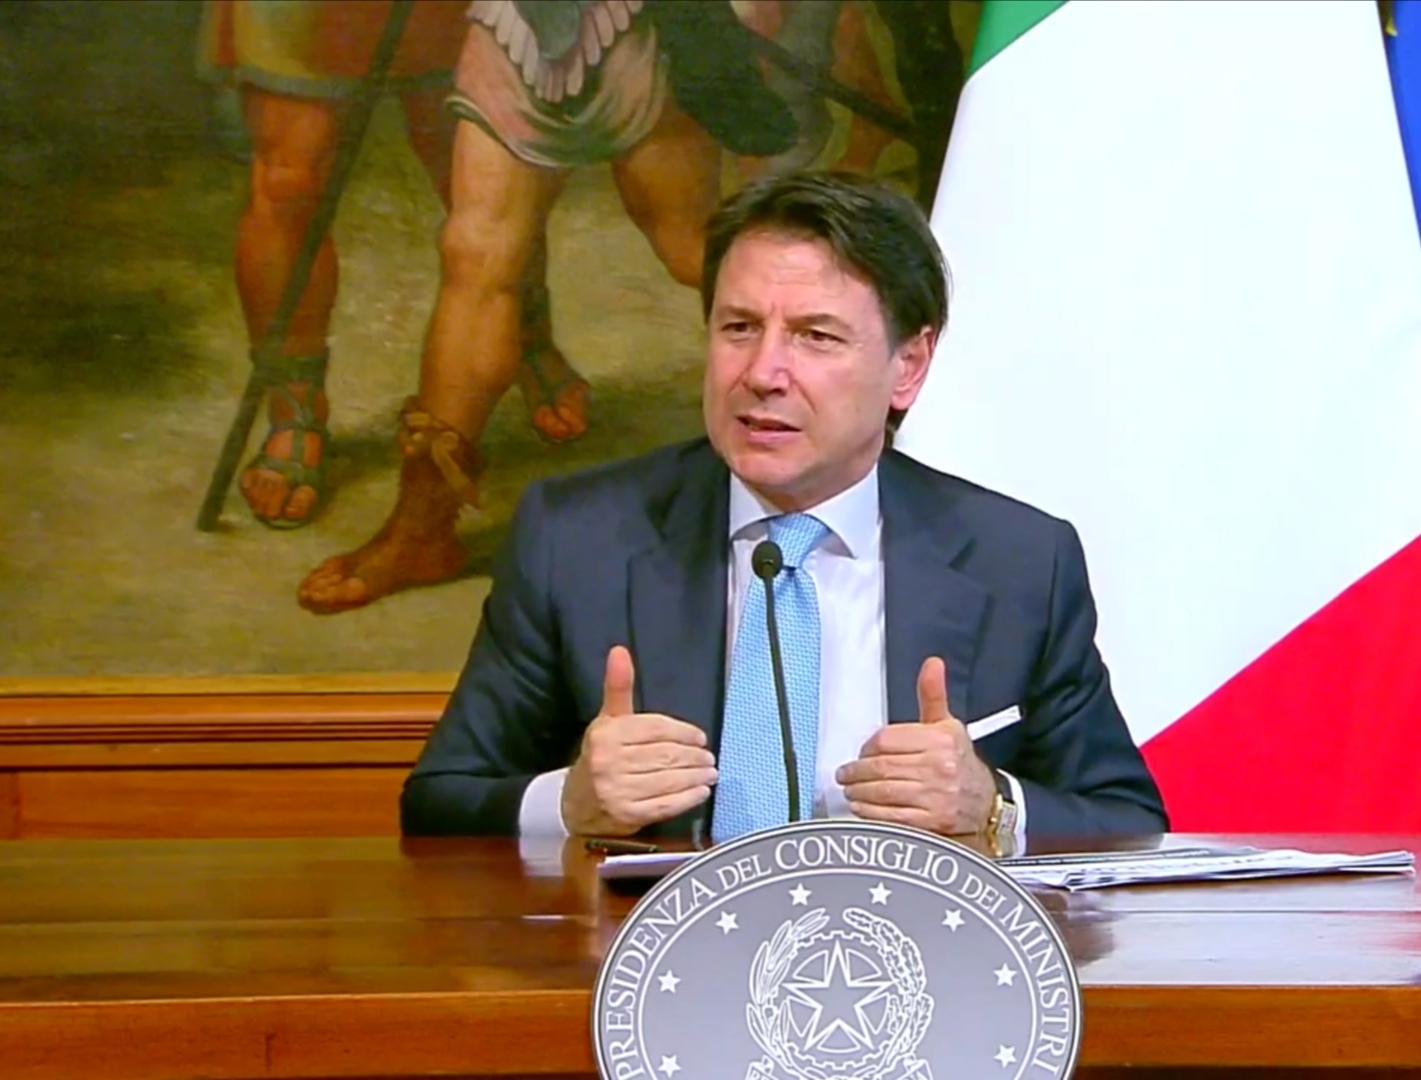 Approvato il Decreto Semplificazioni, Conte: “L’Italia diventa più agile”